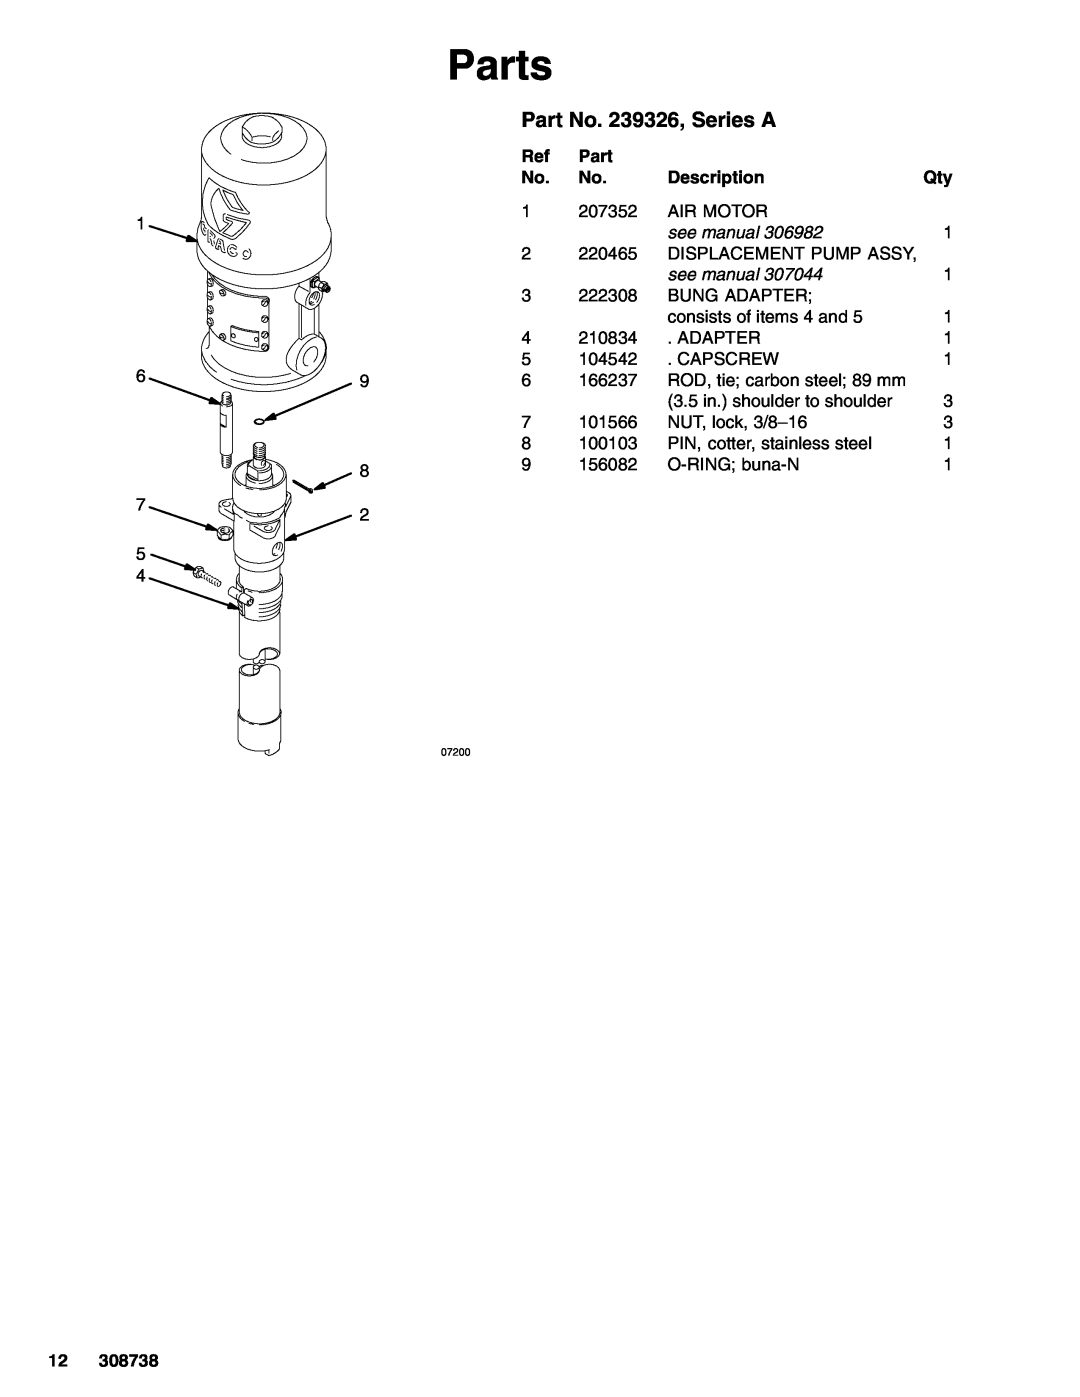 Graco 308738C manual Parts, Part No. 239326, Series A, Description 